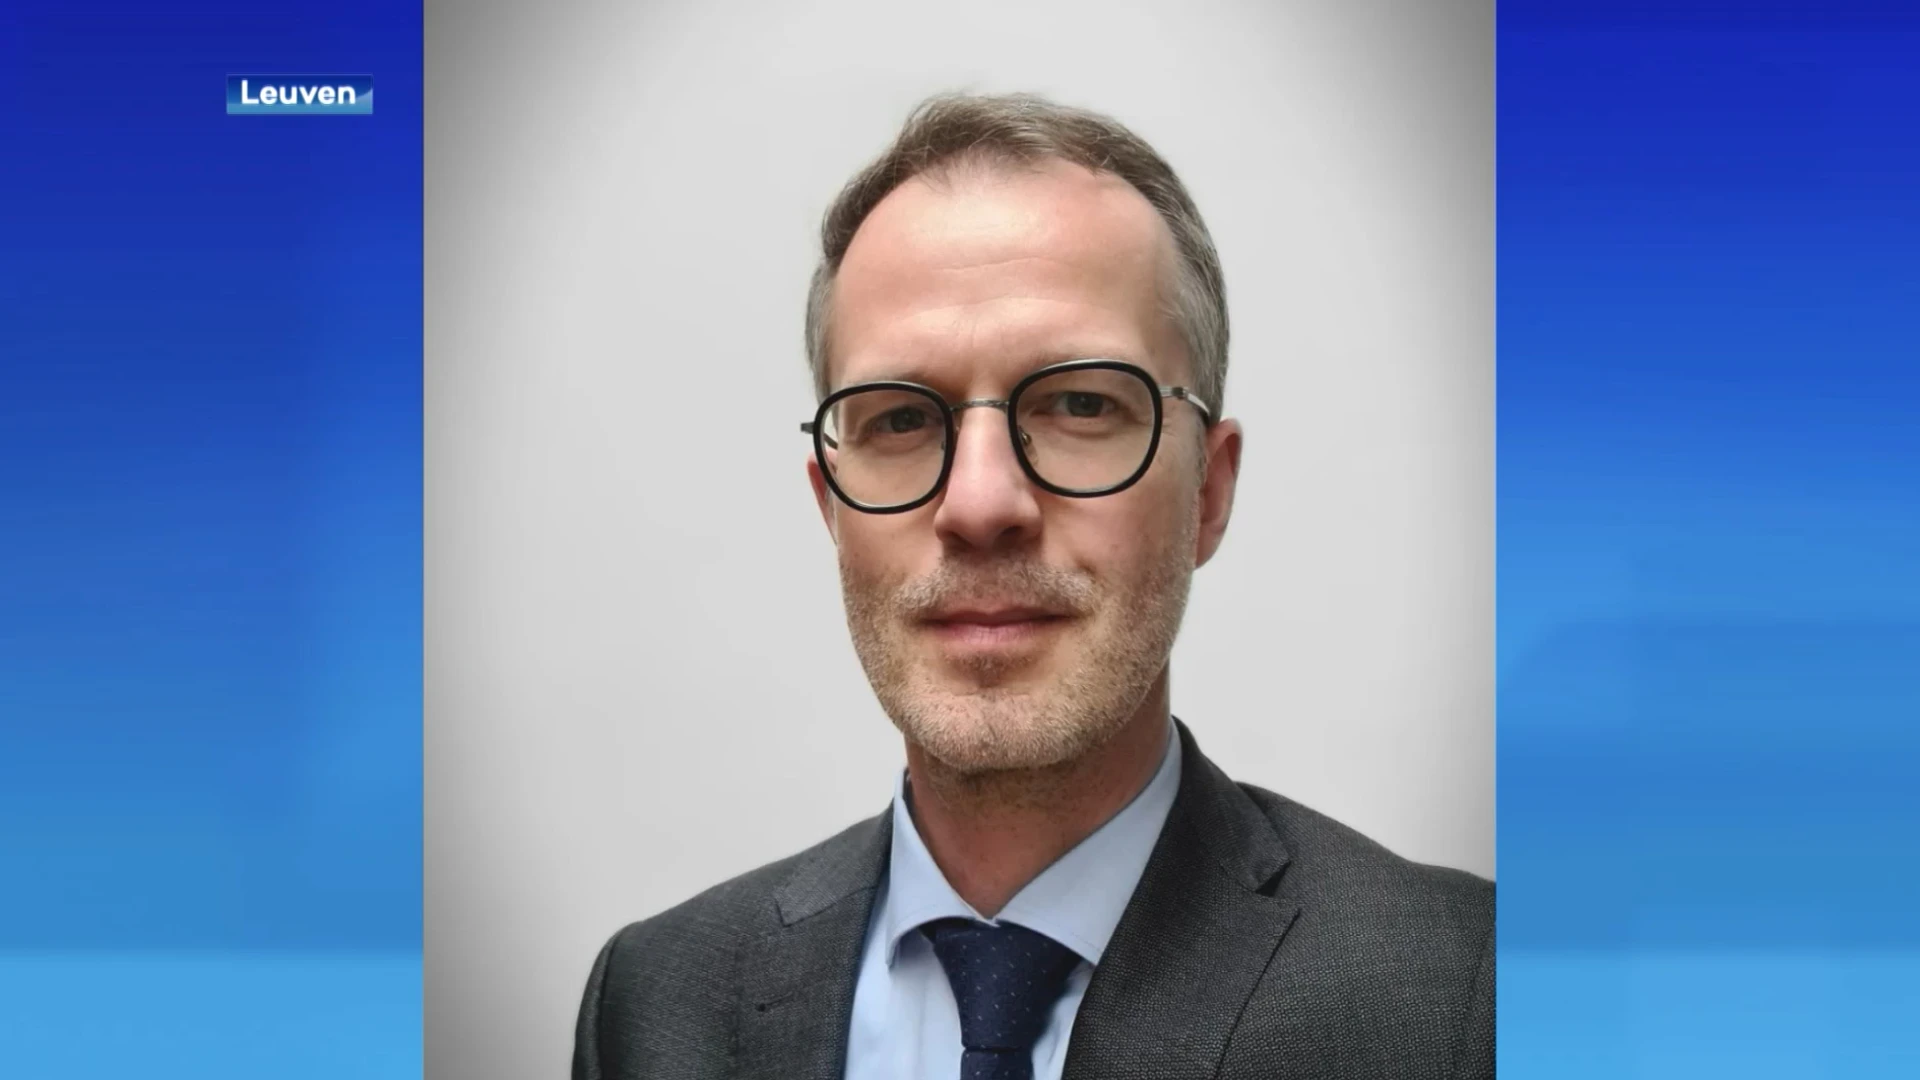 Hans Van Espen is voorgedragen als nieuwe procureur des konings in Leuven